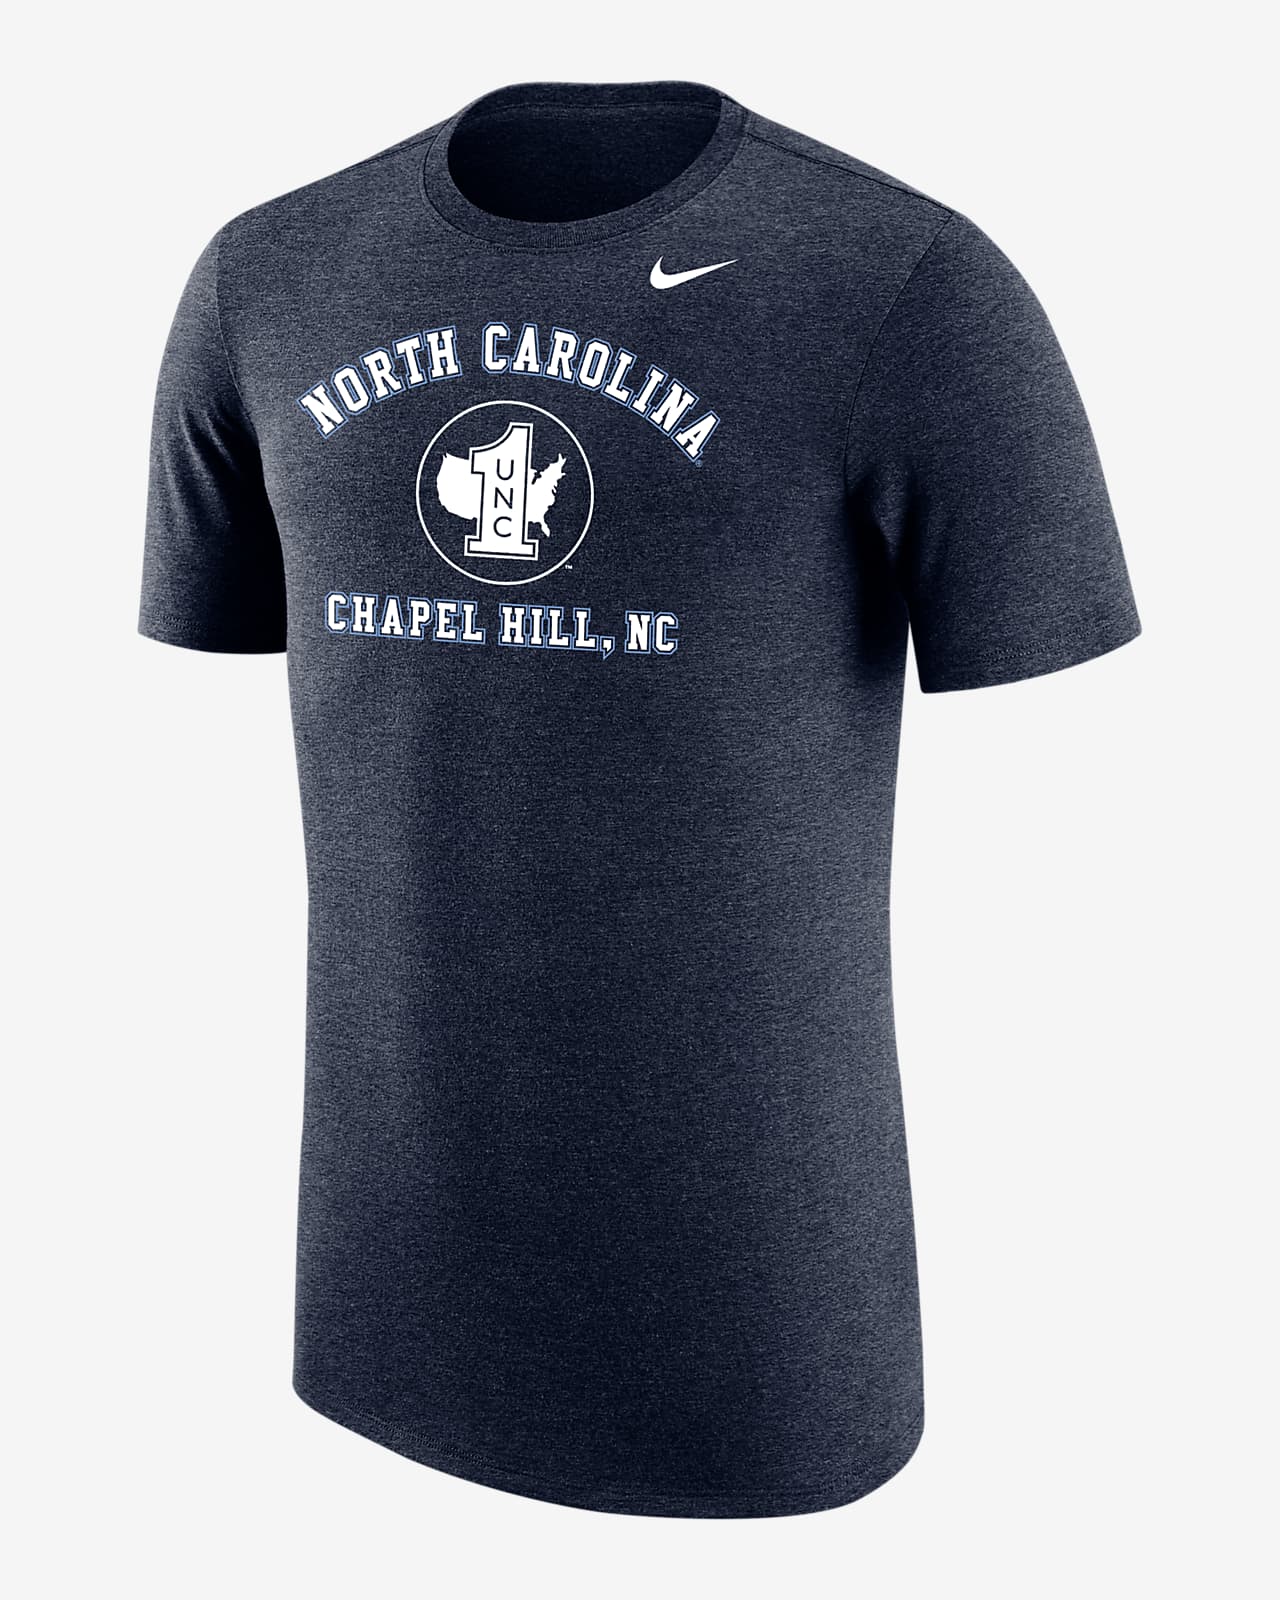 UNC Men's Nike College T-Shirt